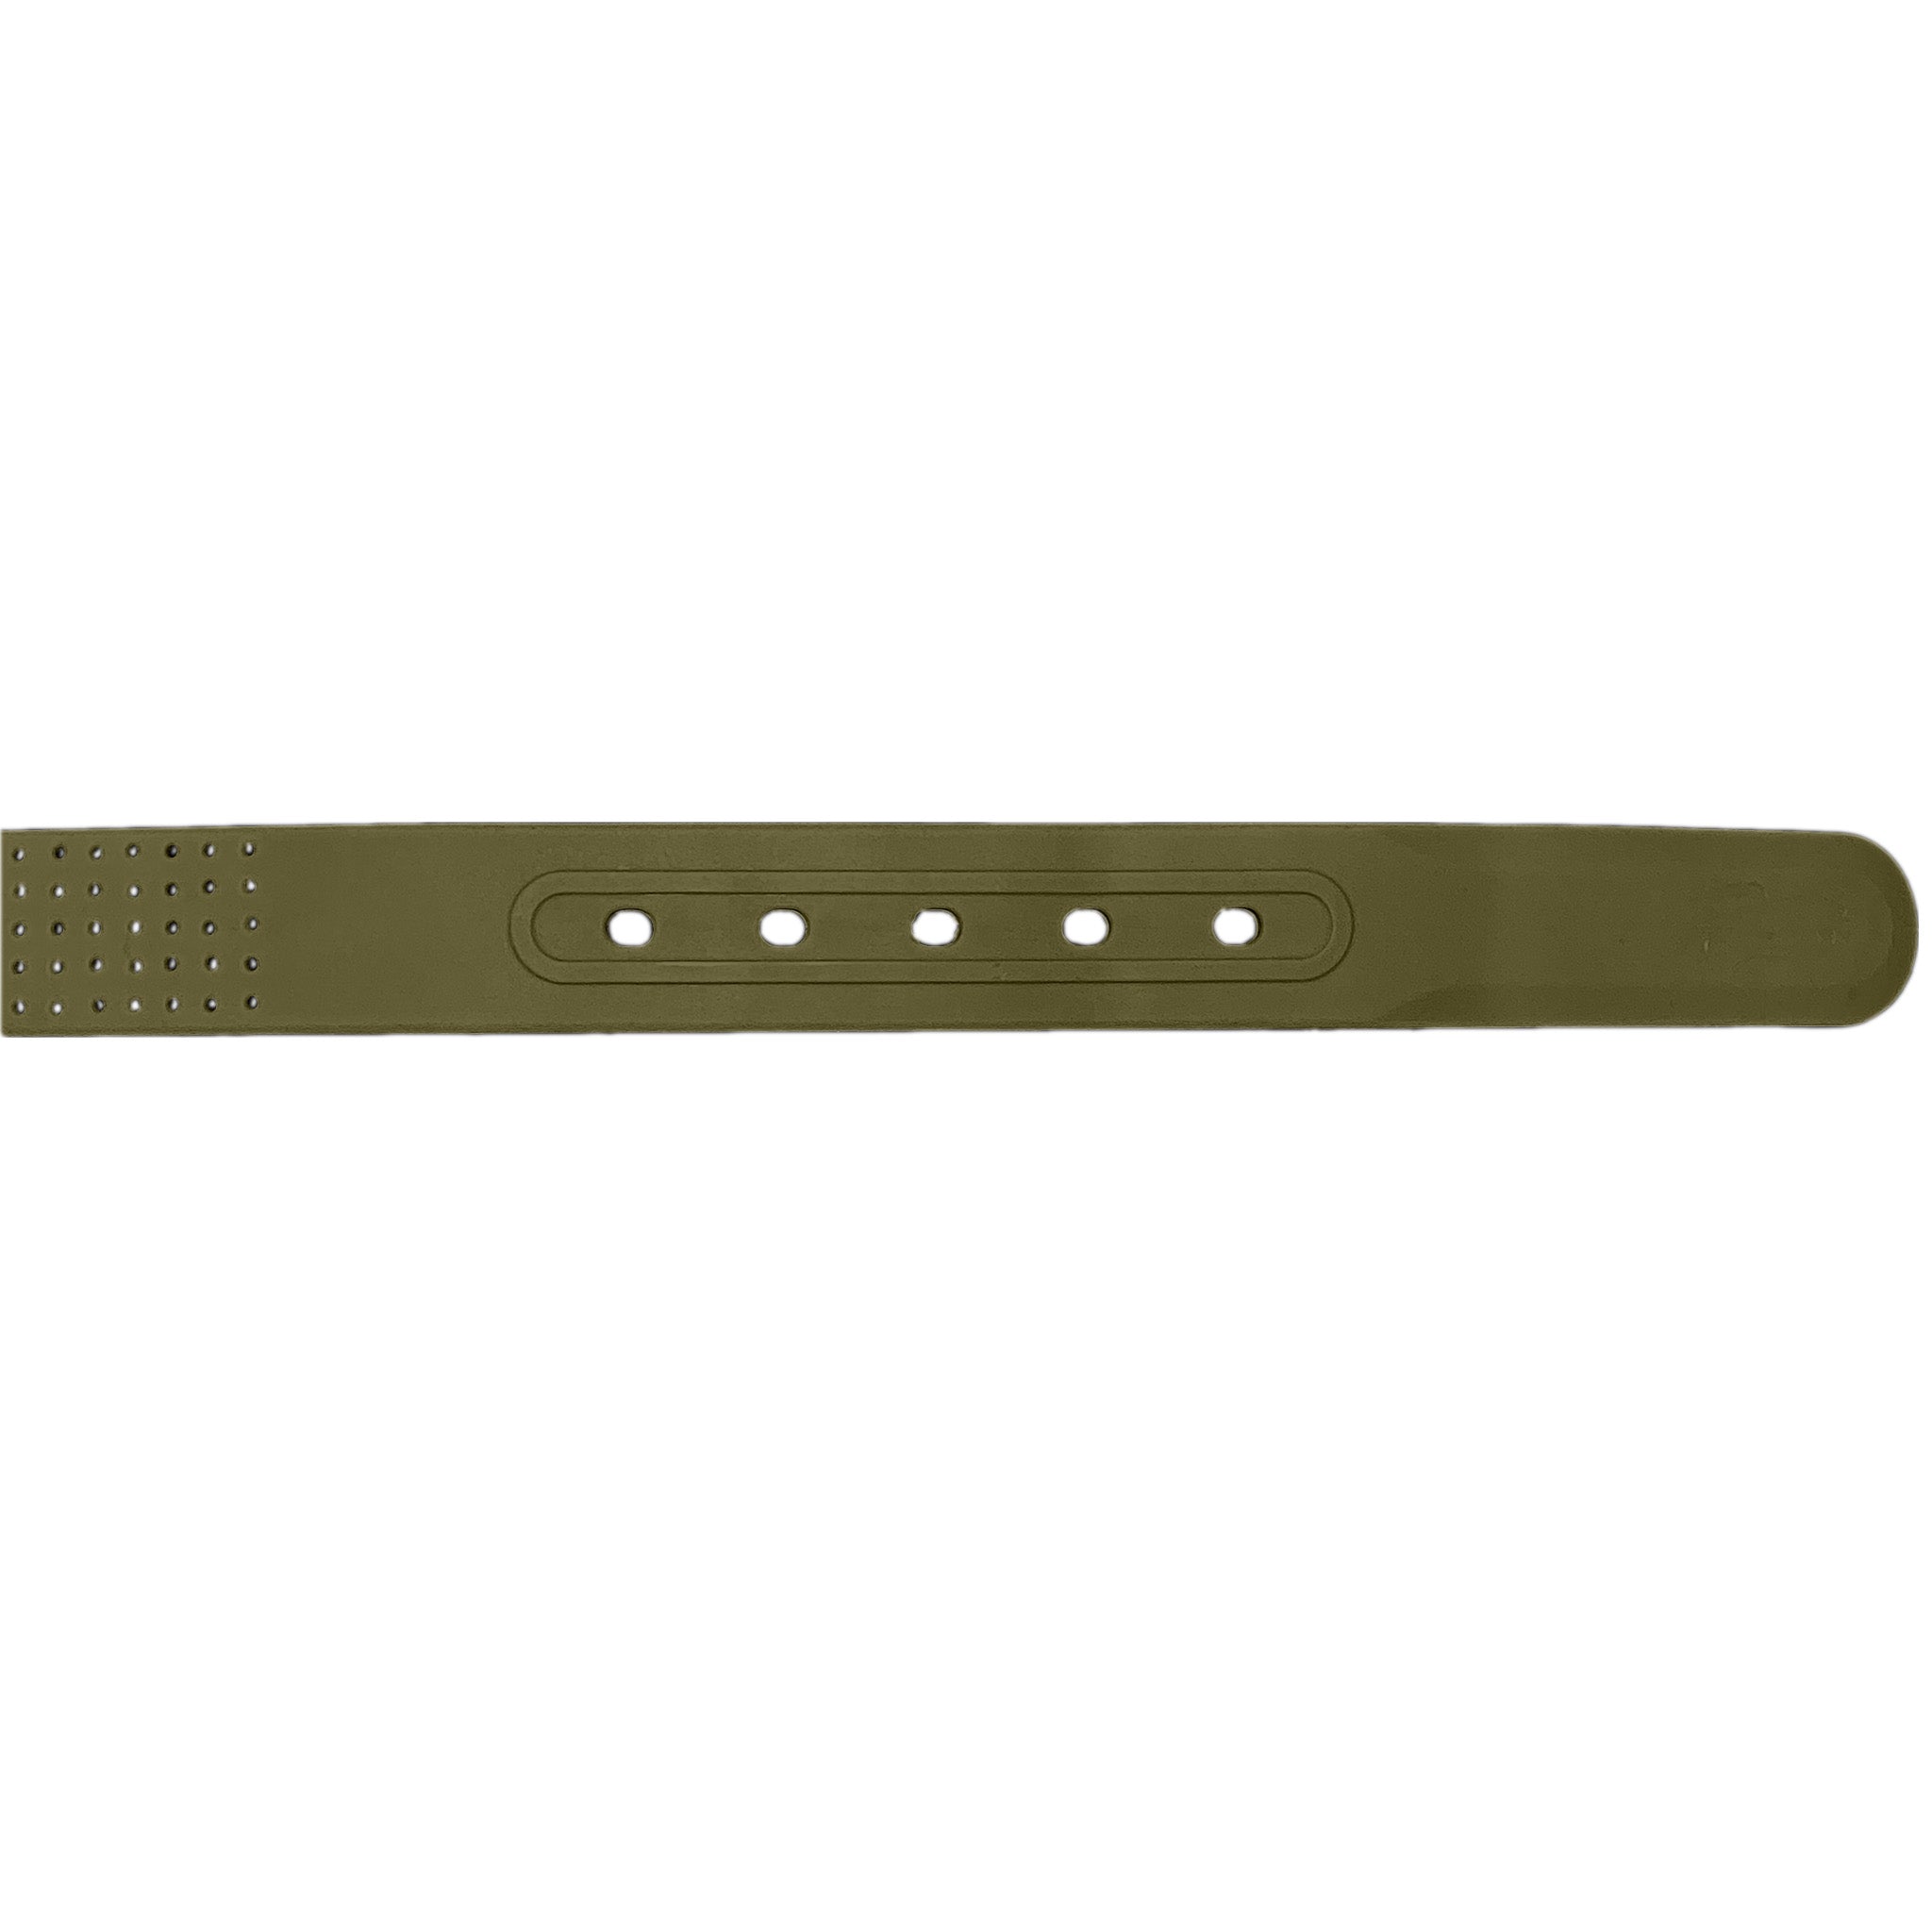 Buy Online Latest High Quality Ranger Green Belt 2.0 Buy mens military green belt - Ridge Belts